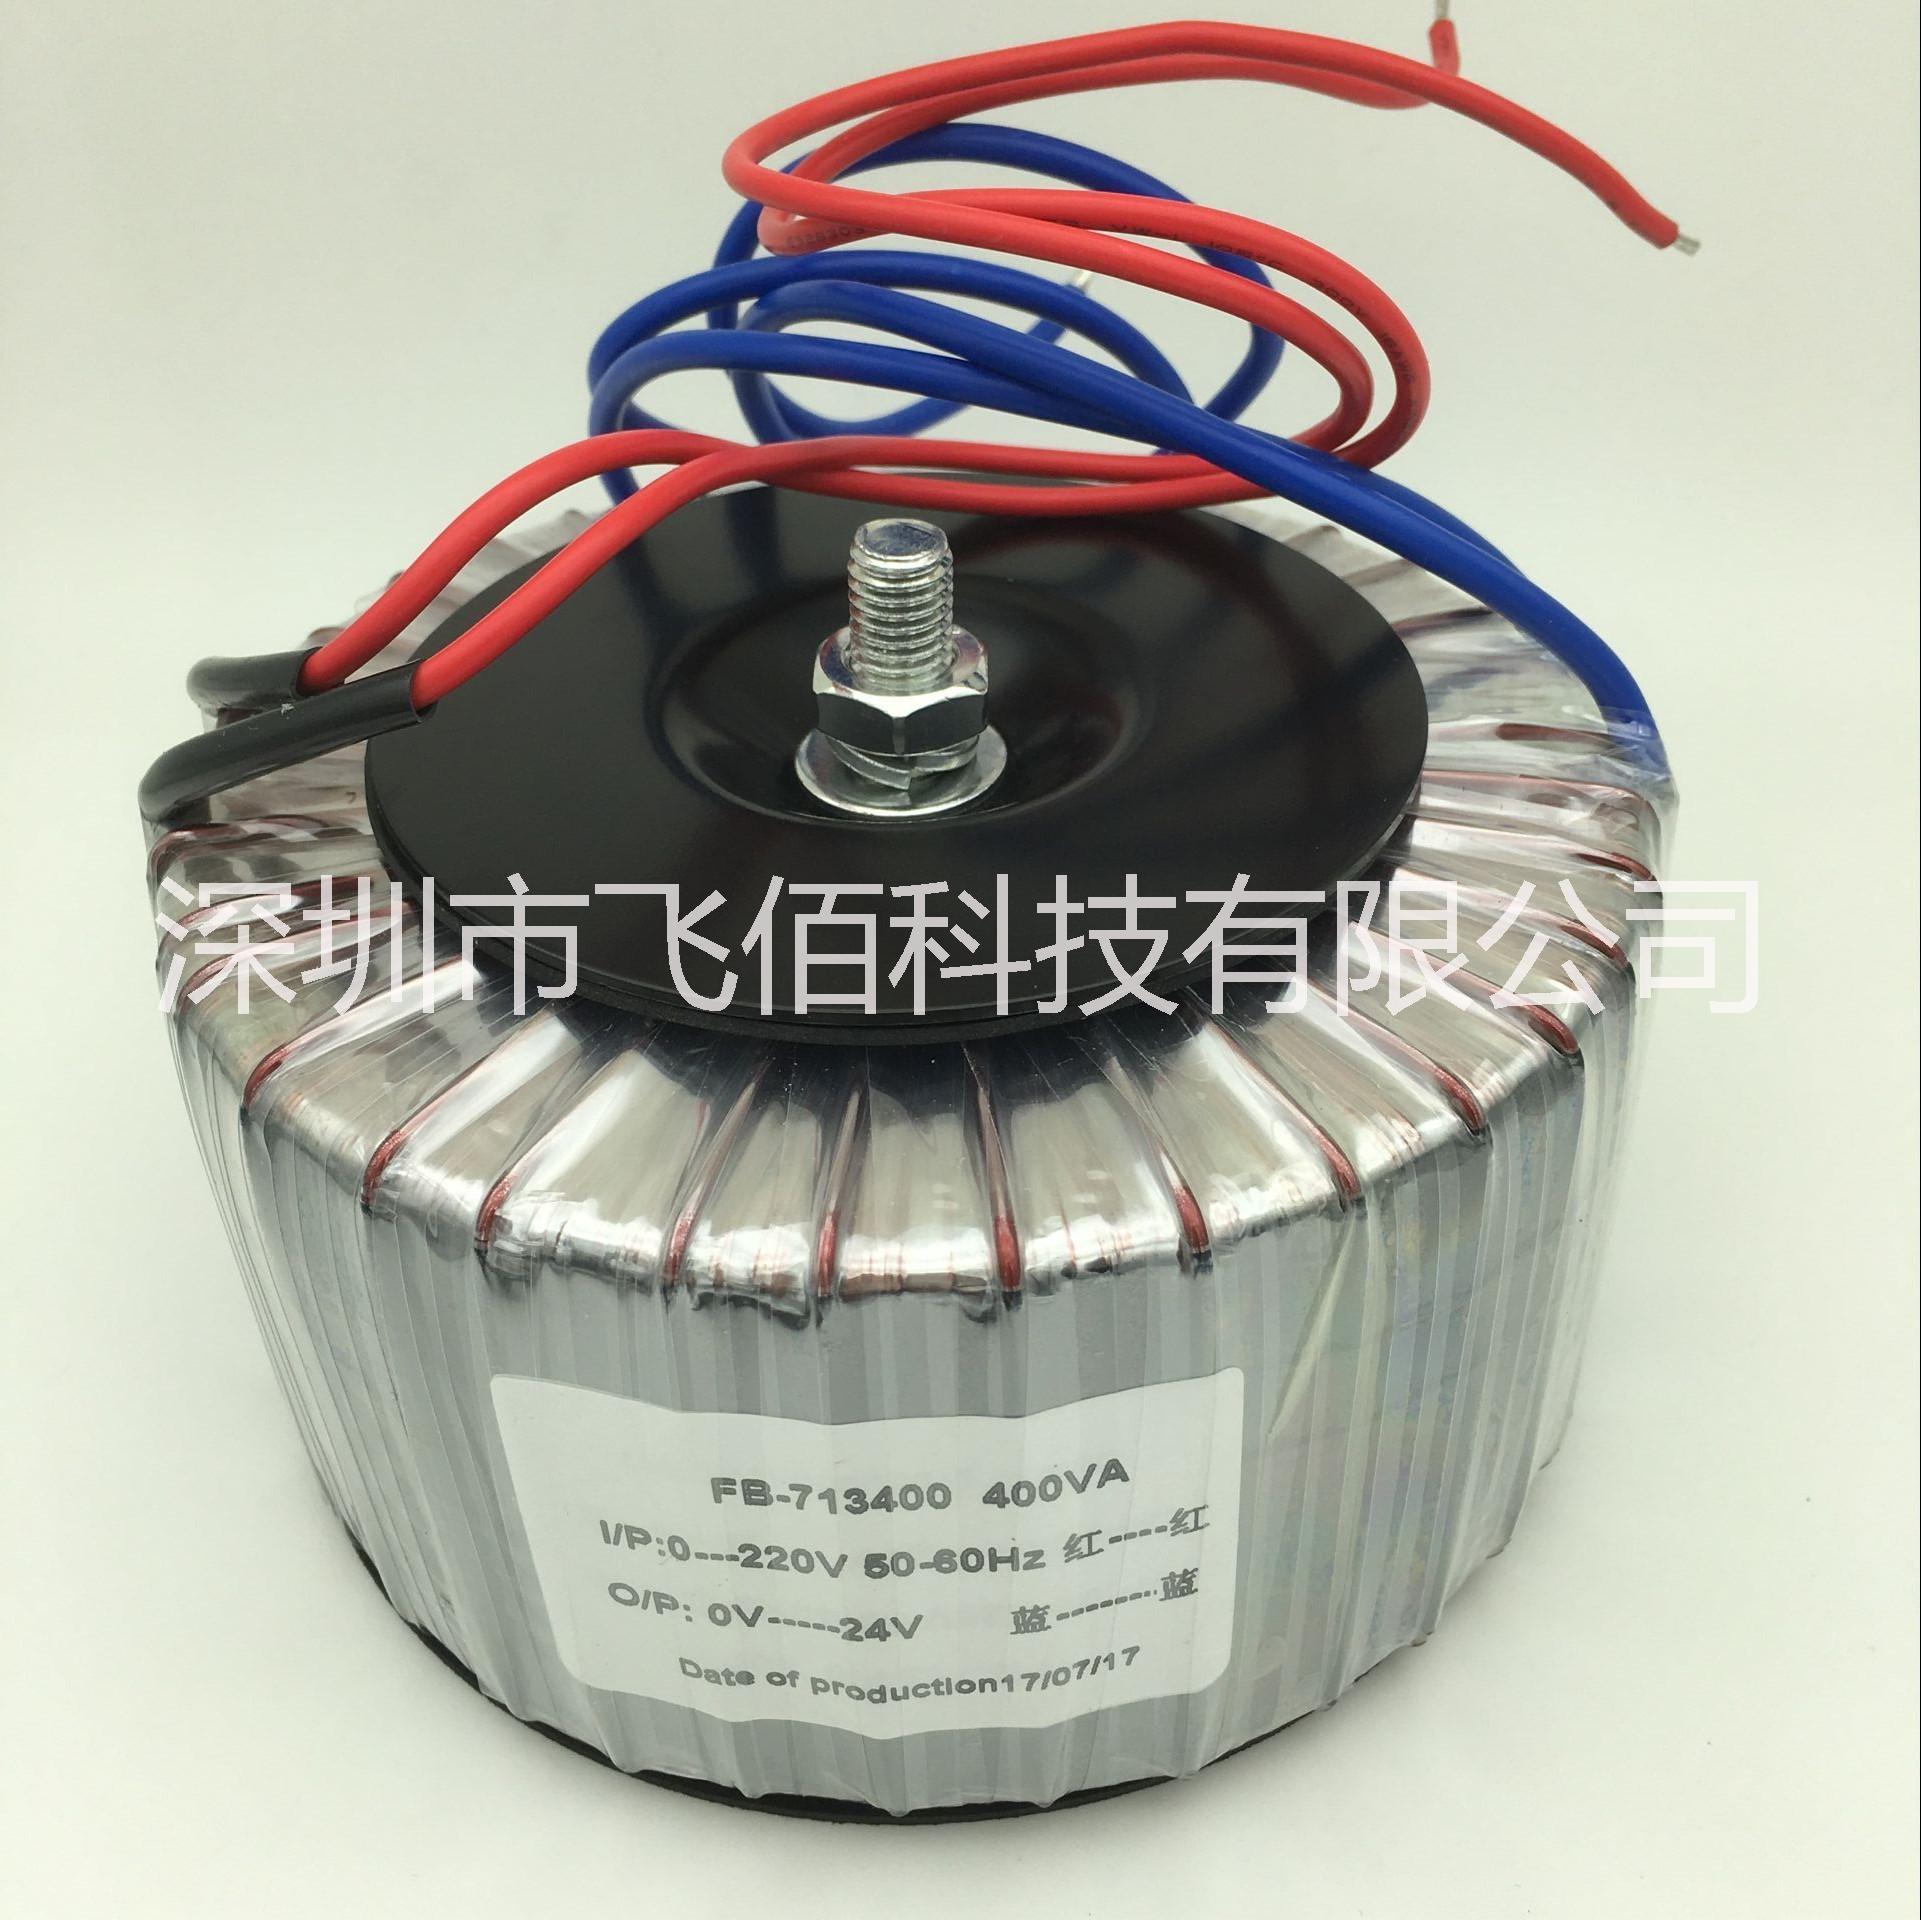 深圳生产厂家 大量生产 隔离环形变压器400VA 功率尺寸均可定制图片